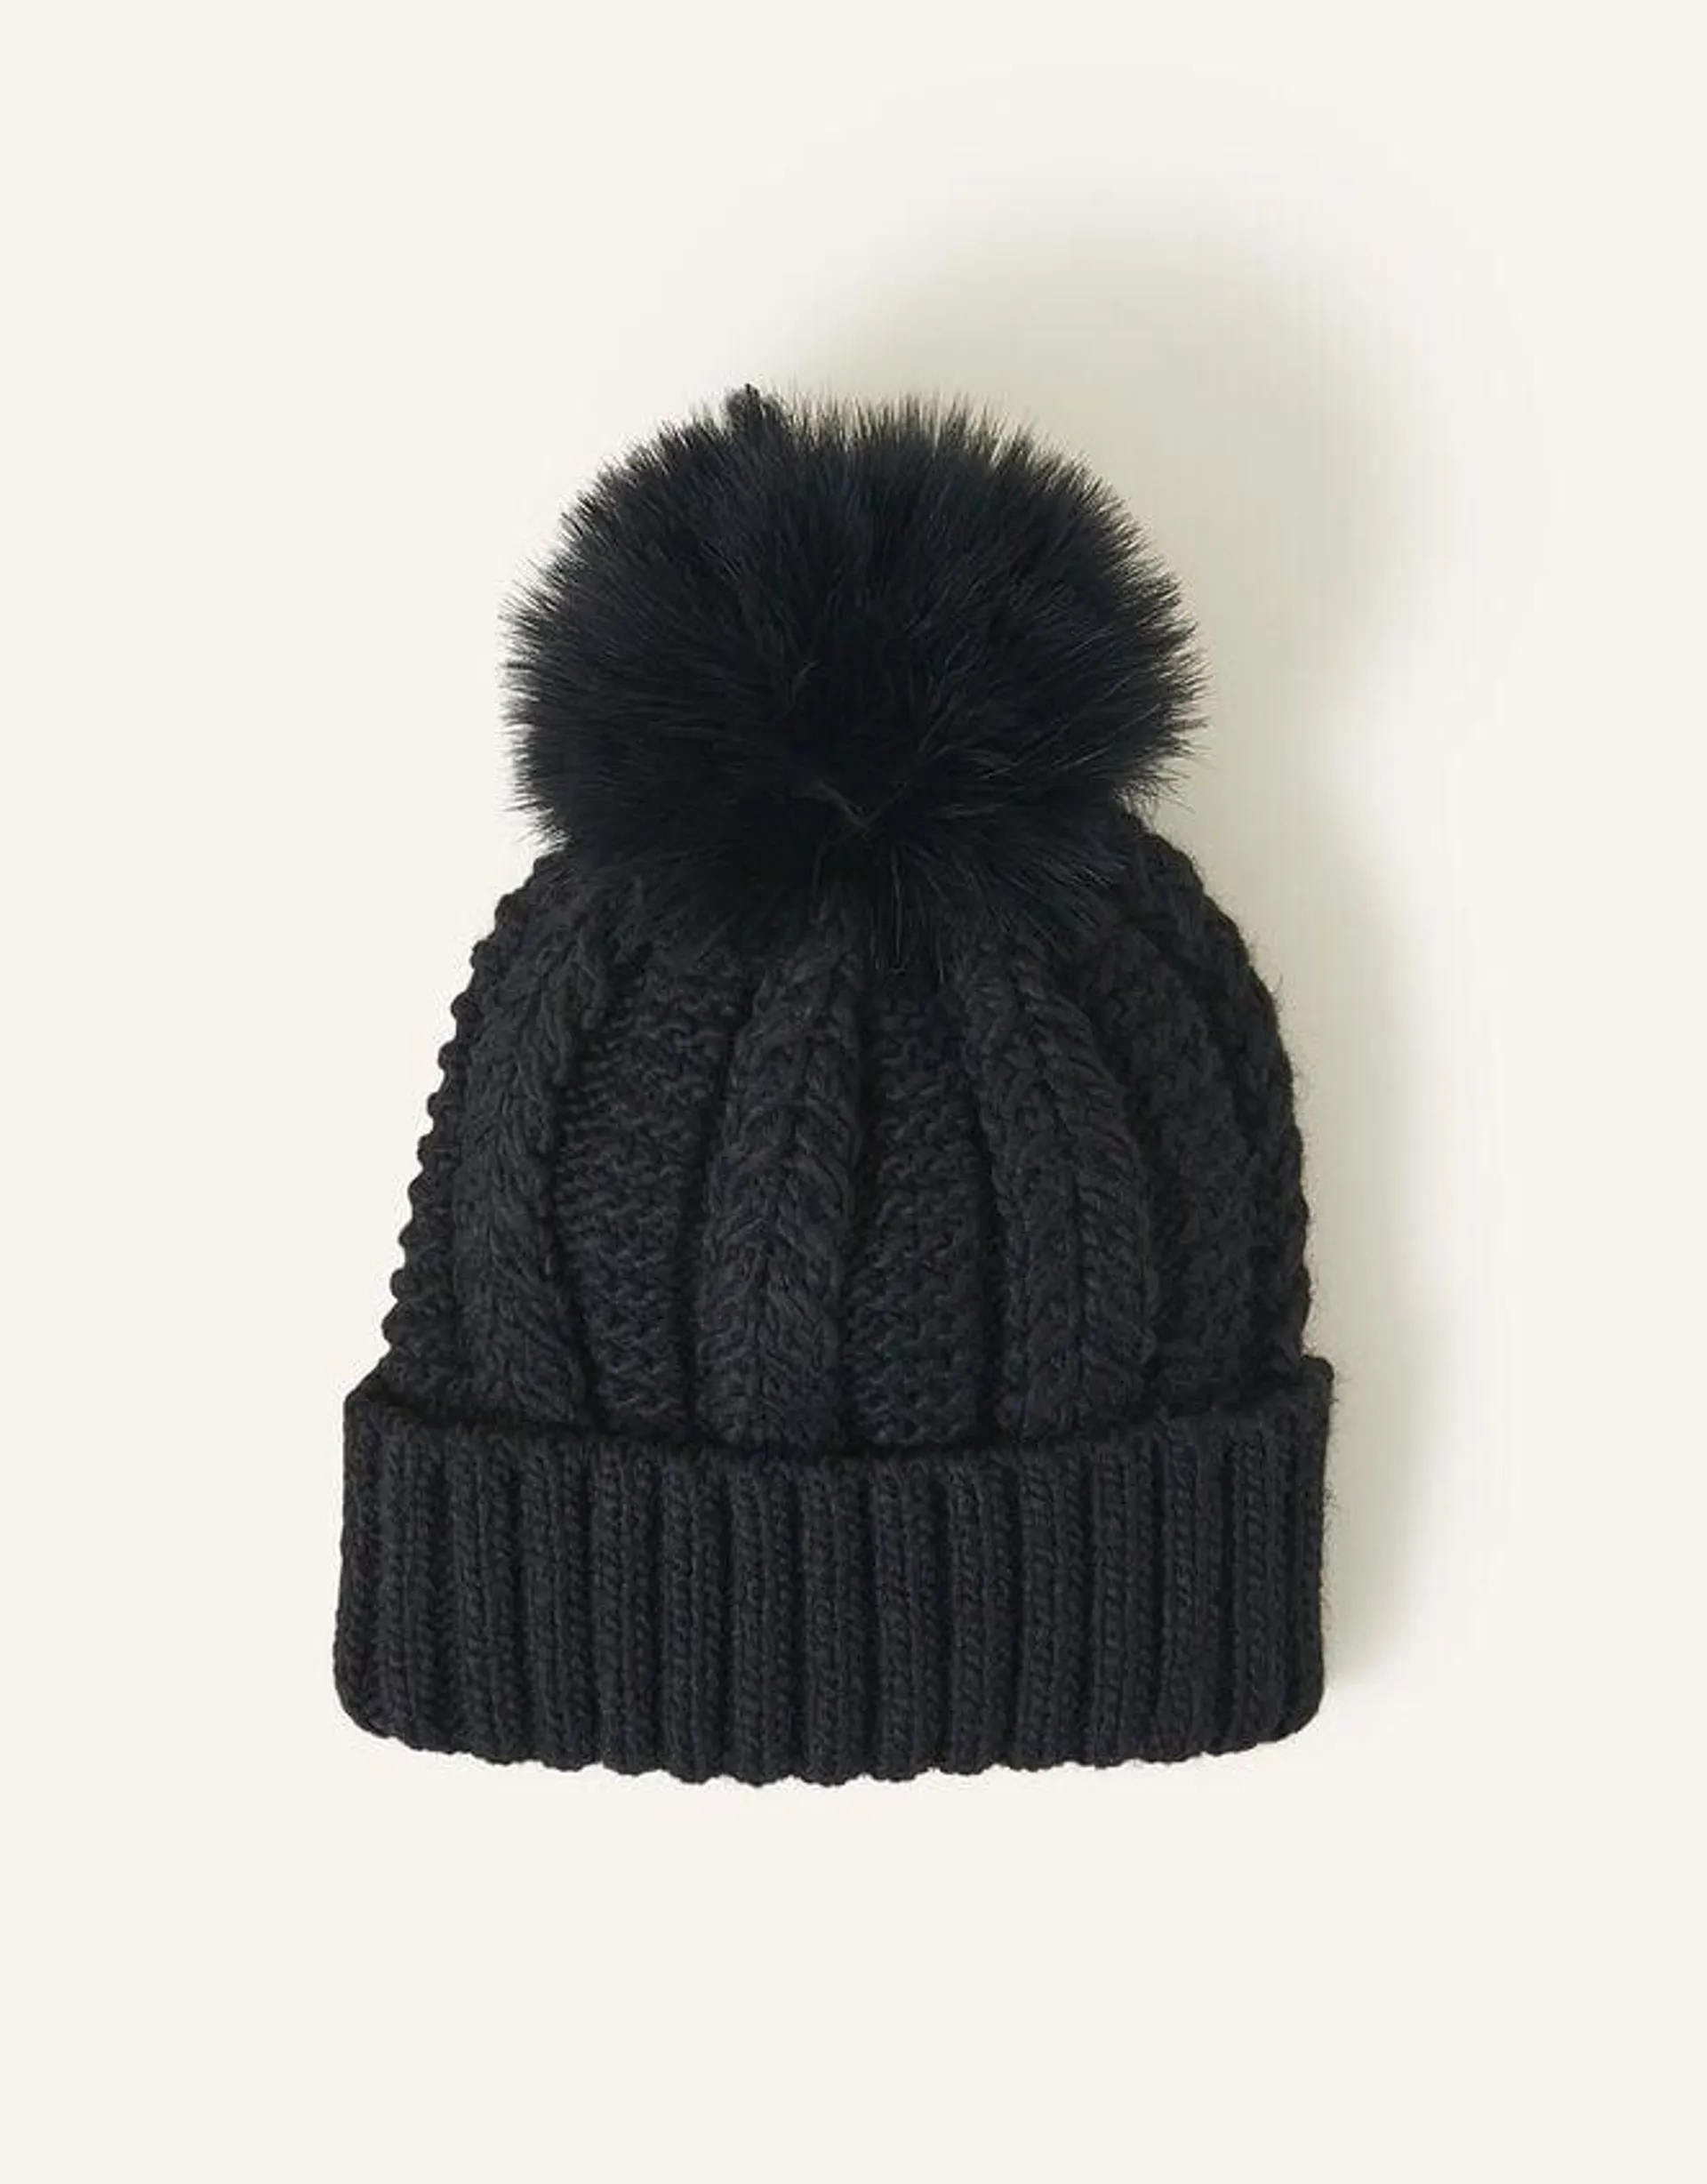 Pom-Pom Beanie Hat Black